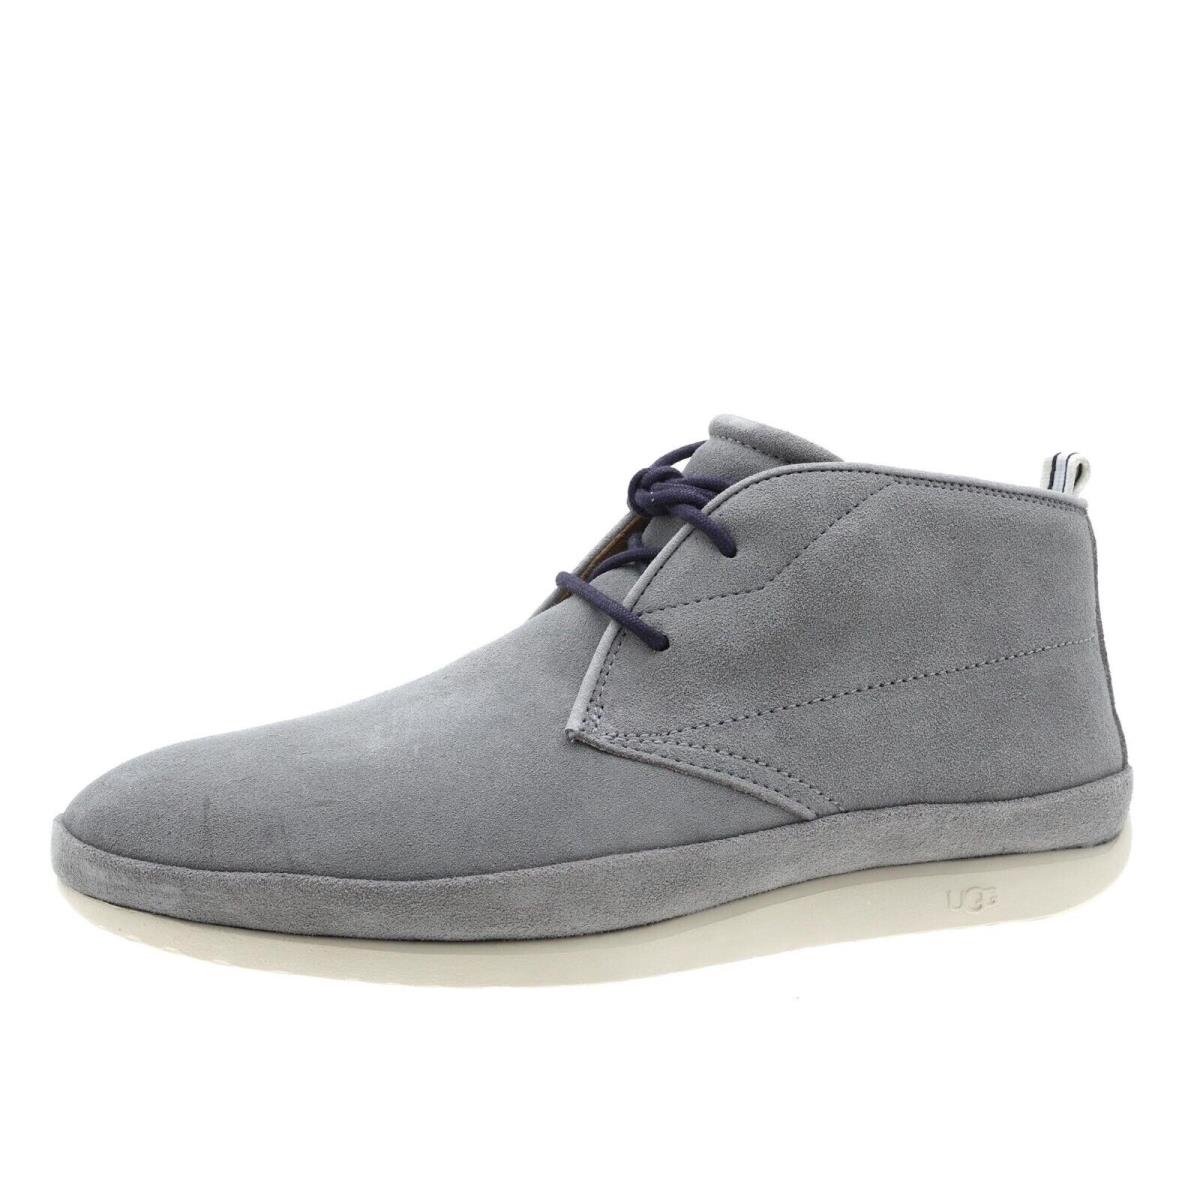 Ugg N4941 Cali Chukka Seal Mens Grey Shoes Size US 8 EU 40.5 - Gray